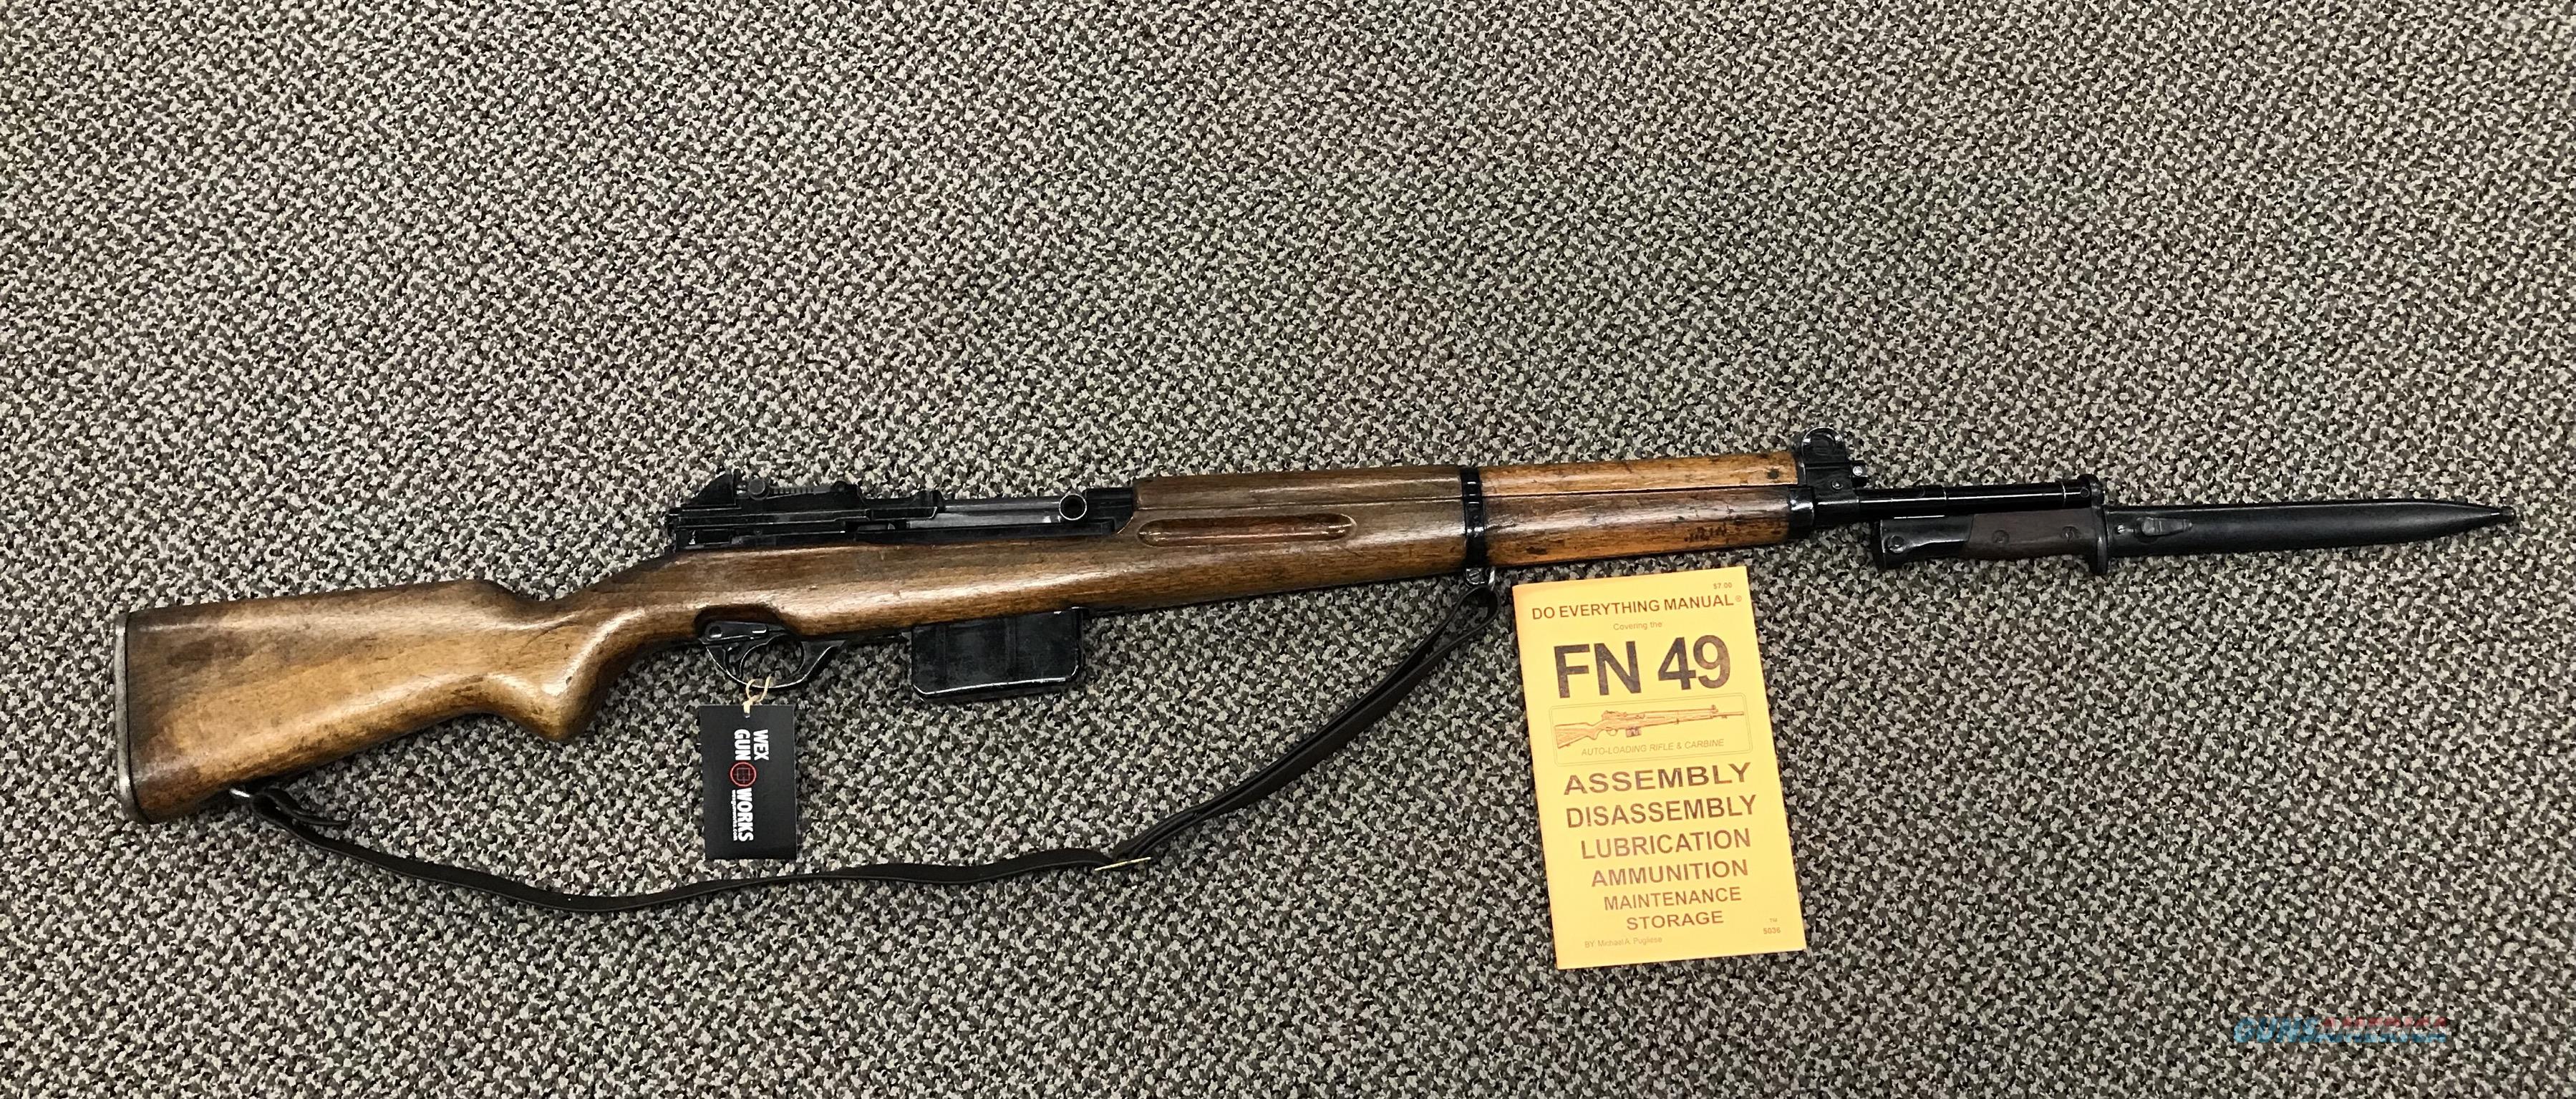 fn 49 serial numbers